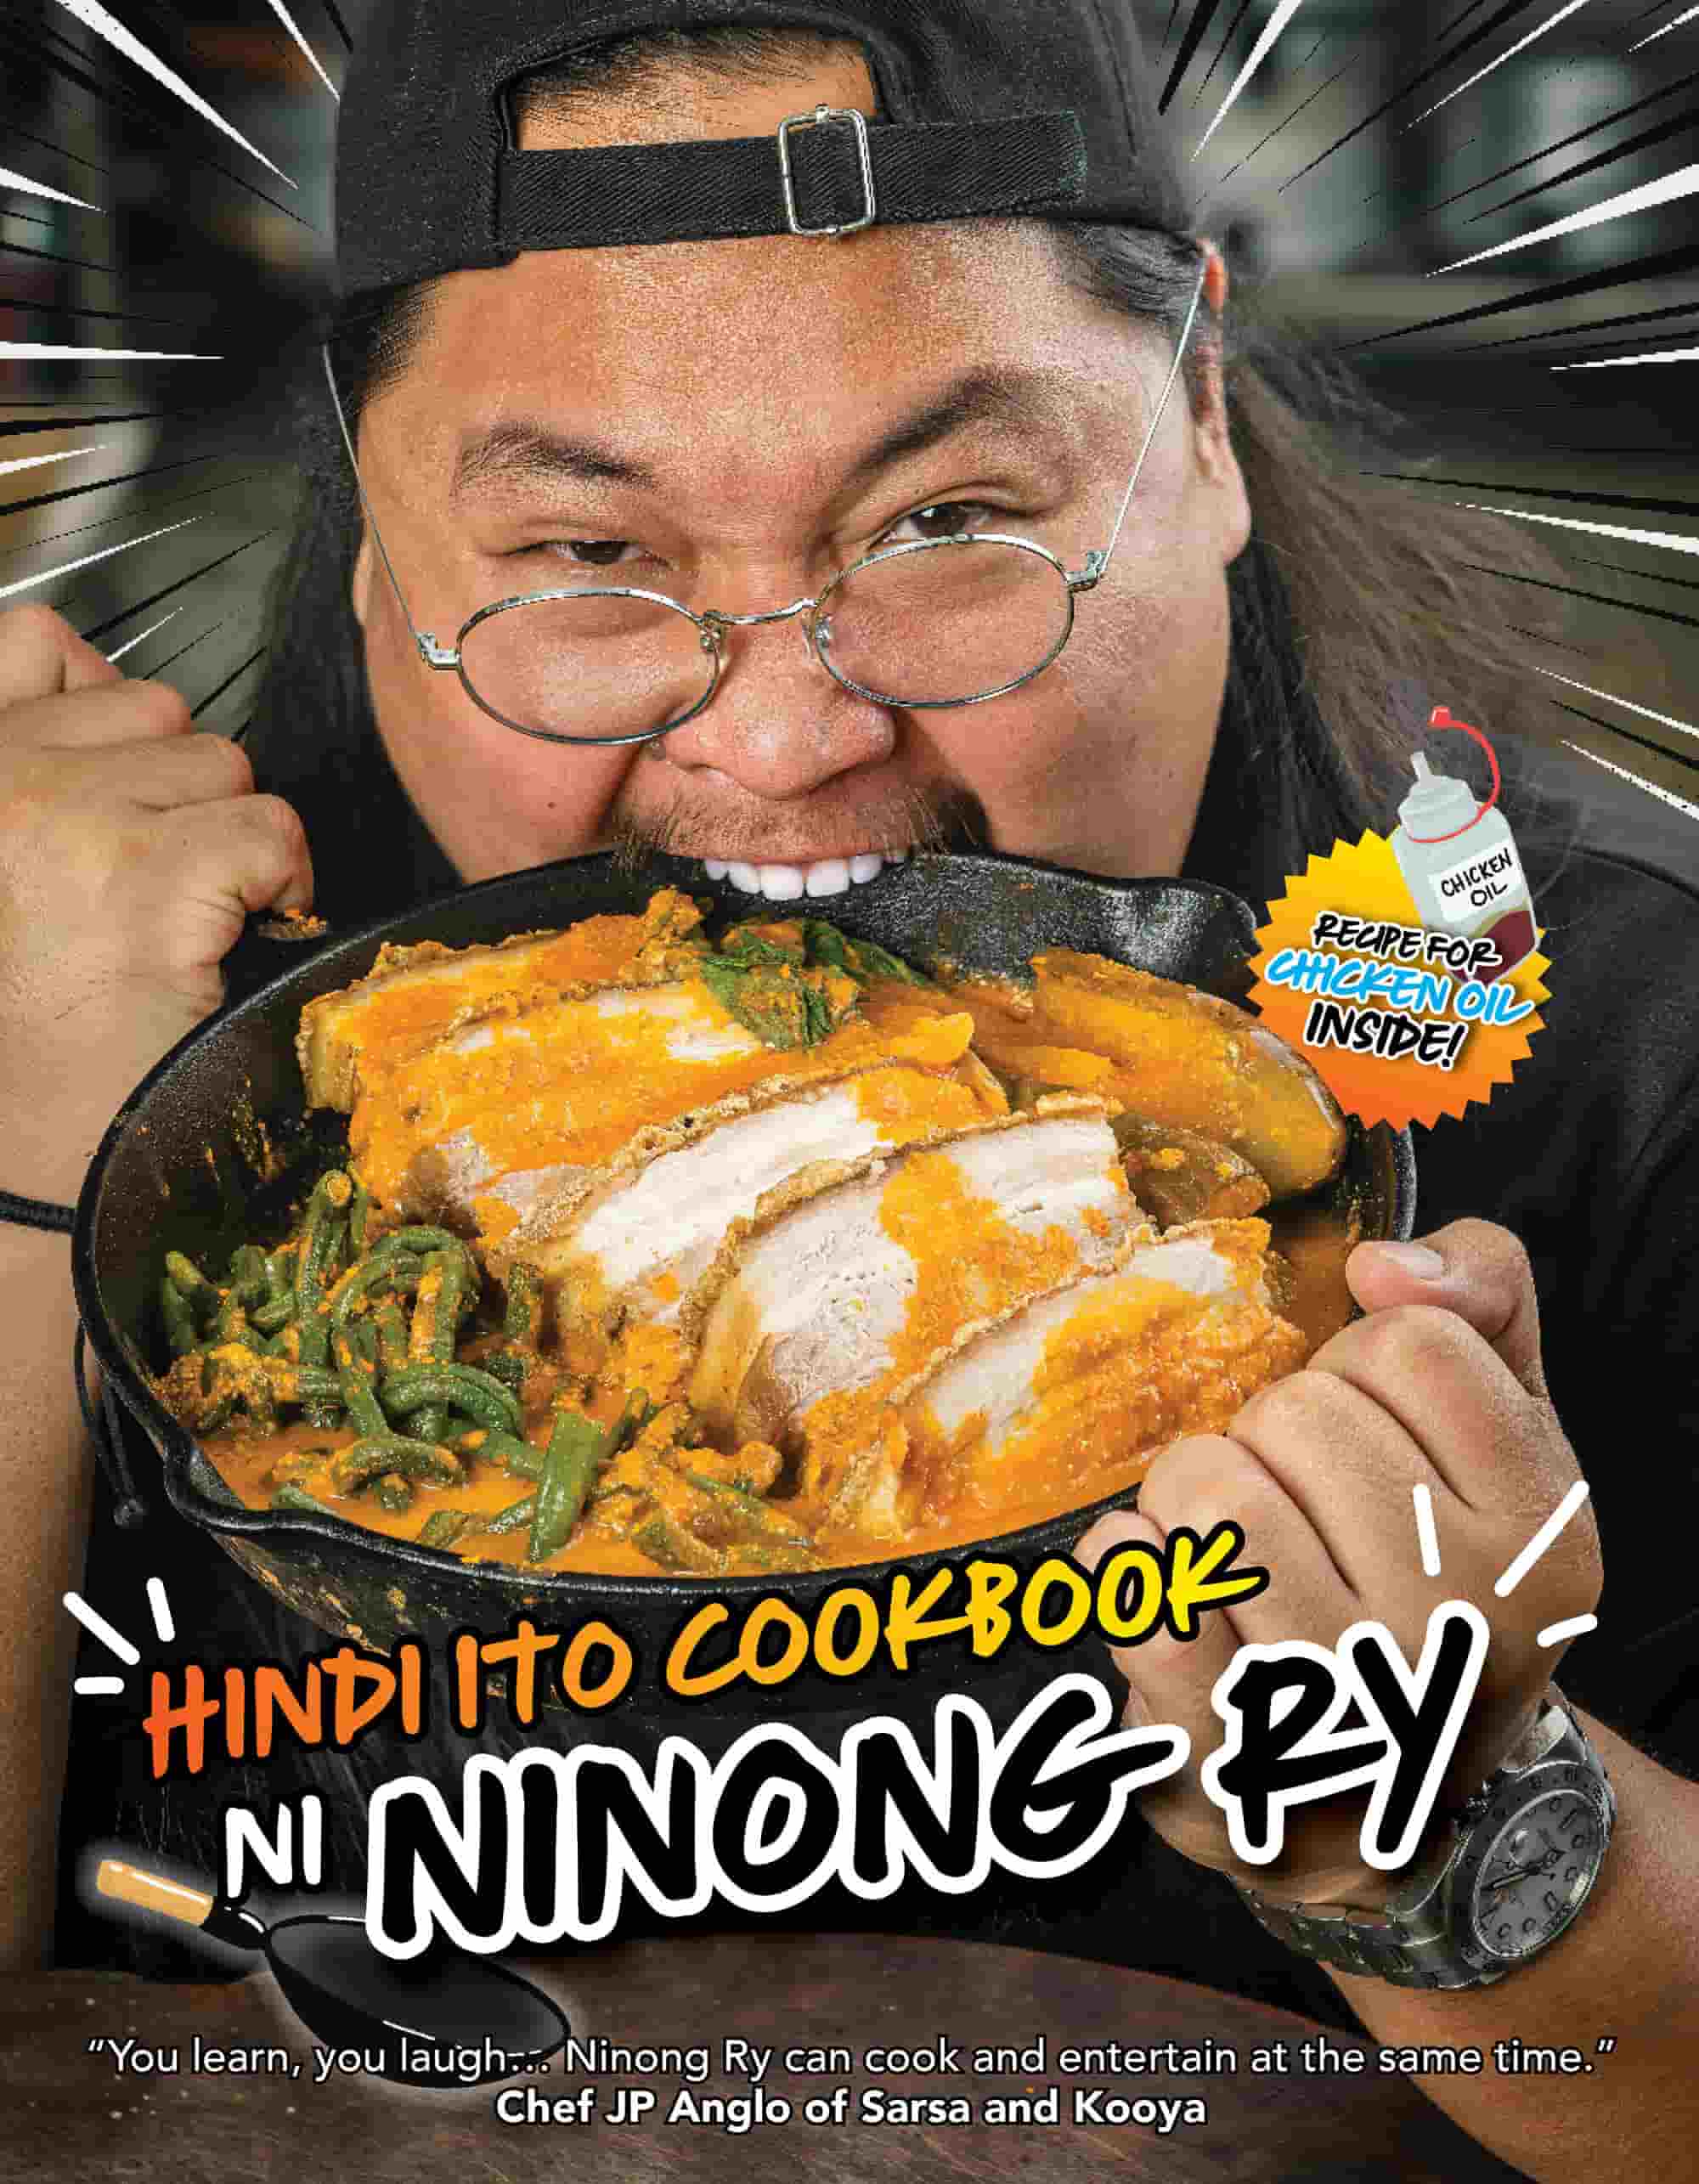 ninong ry credits culinary success to parents, 'hindi nila ako masyadong hinigpitan, and nagbunga ng maganda'